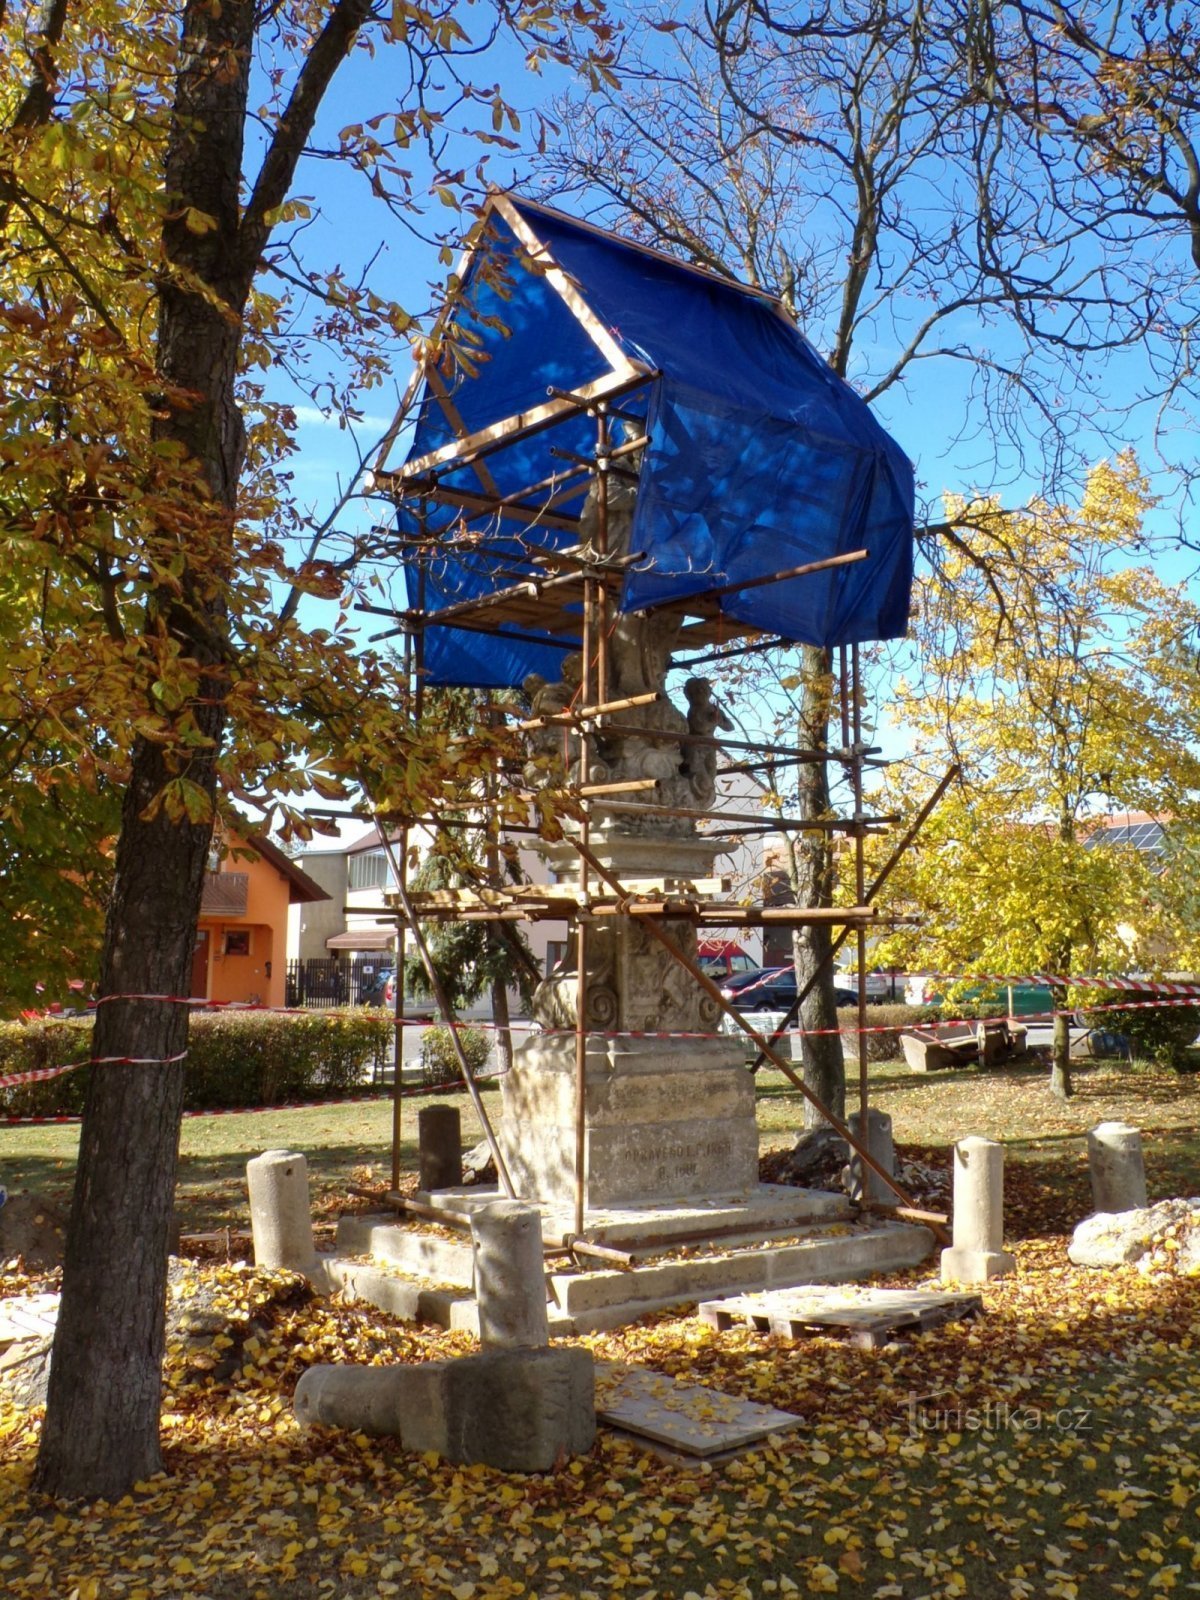 Riparazione della statua di S. Giovanni Nepomuceno (Sezemice, 20.10.2021/XNUMX/XNUMX)